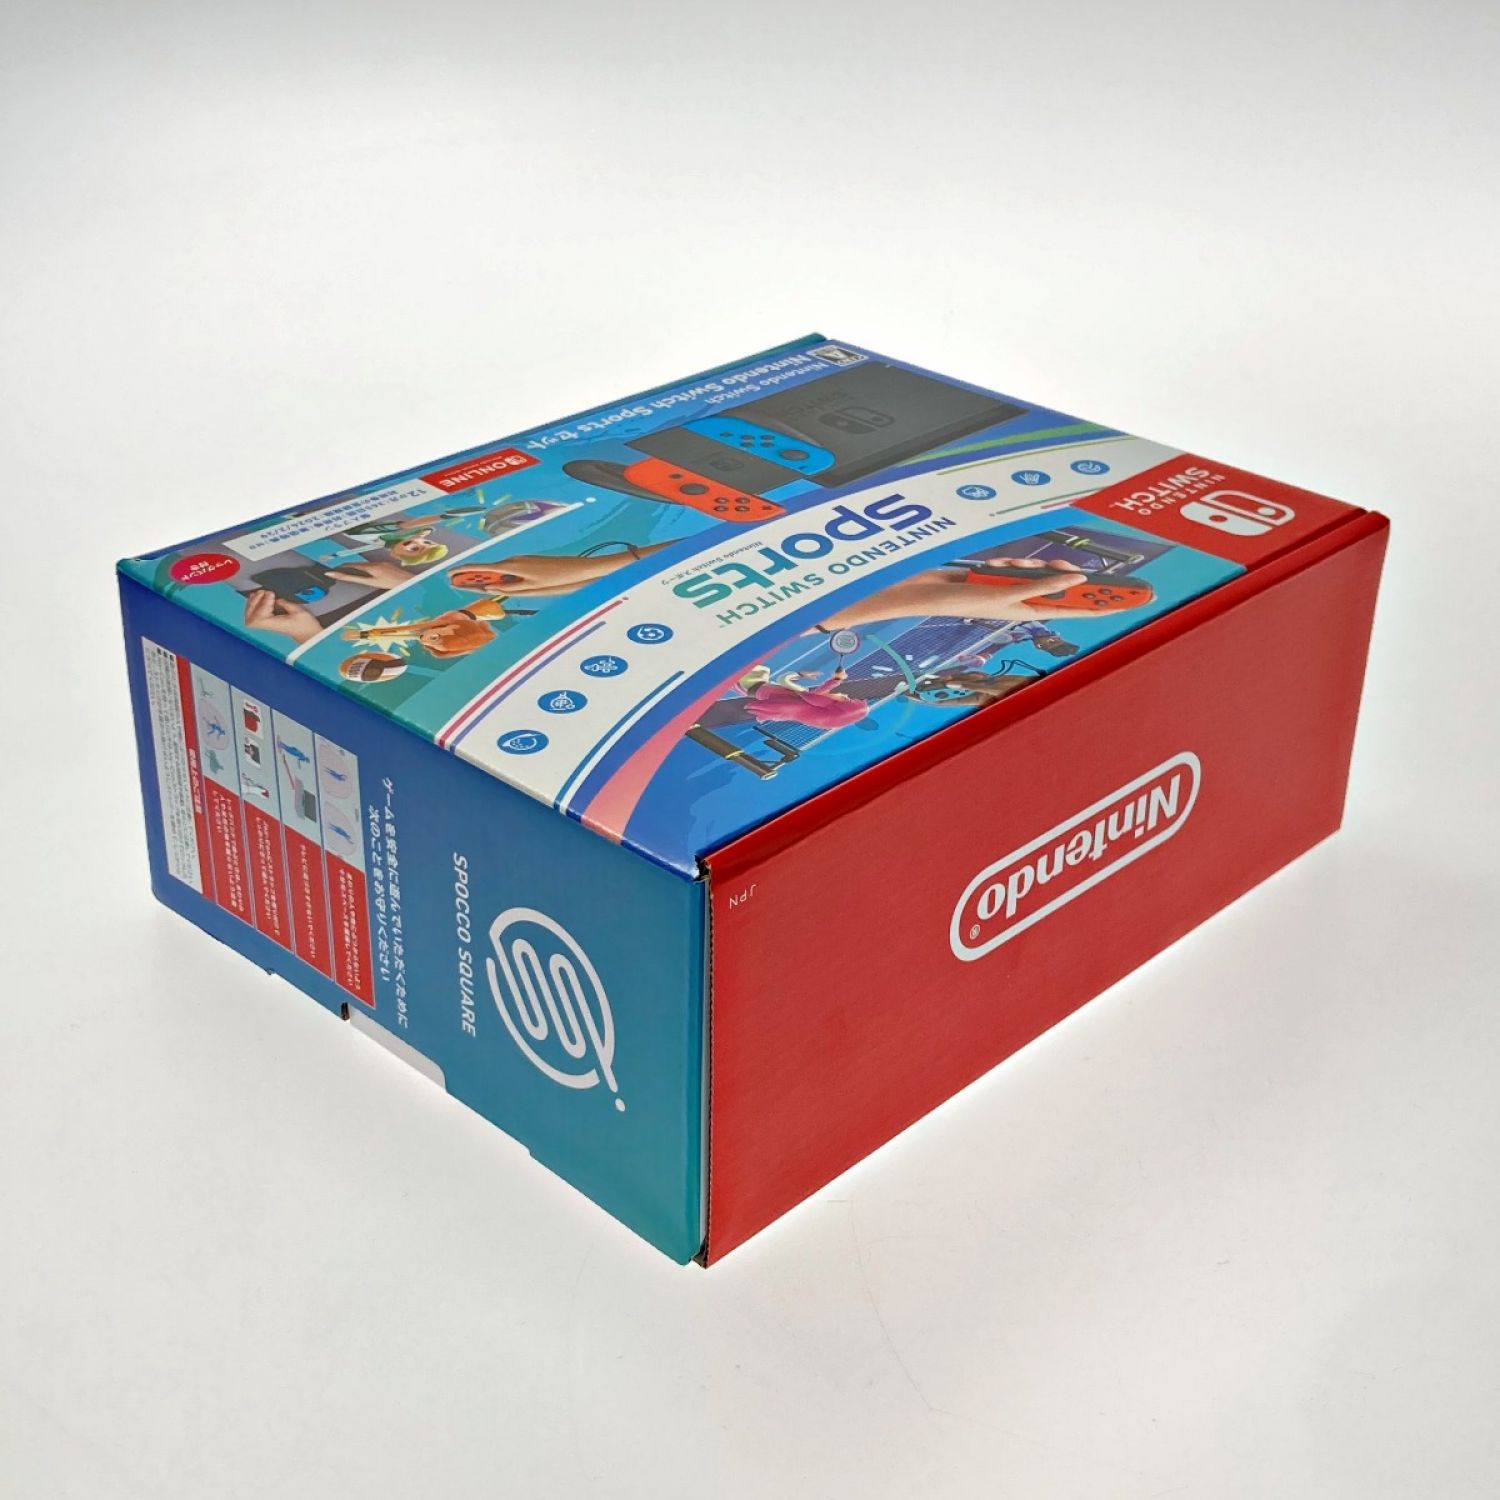 中古】 Nintendo 任天堂 Nintendo Switch Sports セット ダウンロード ...